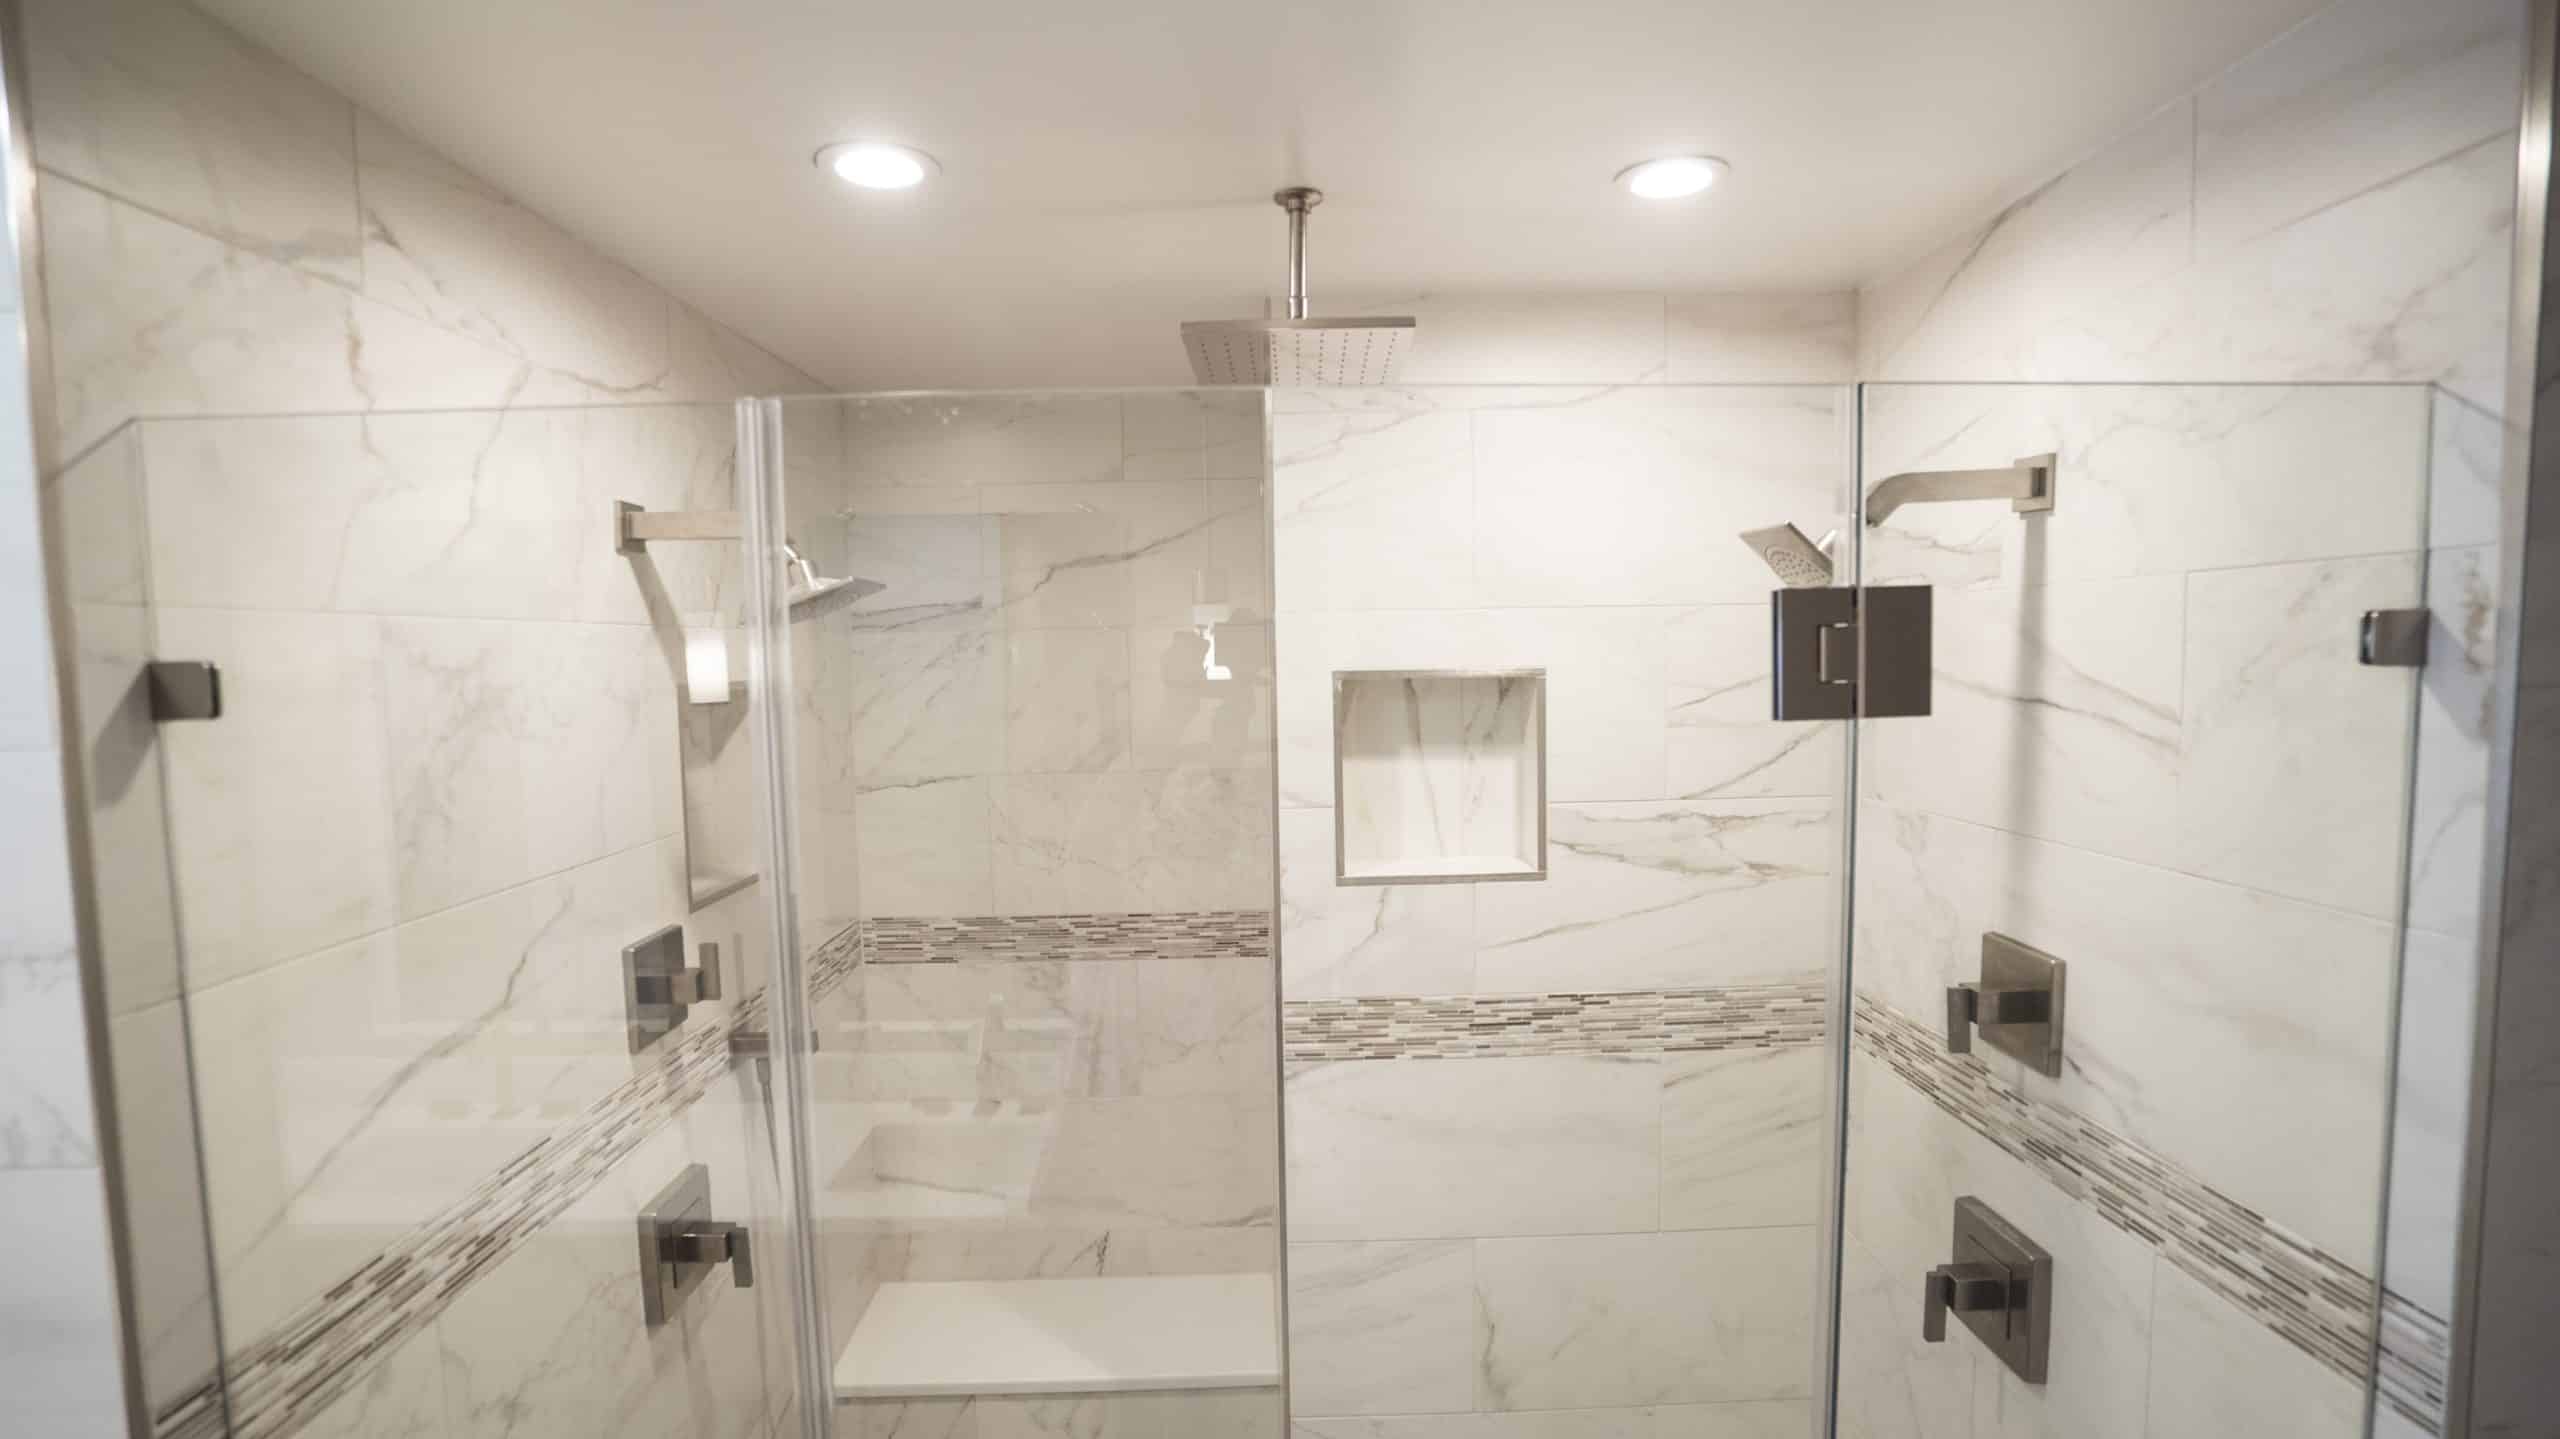 A modern walk-in shower with sleek glass doors and a transparent glass door